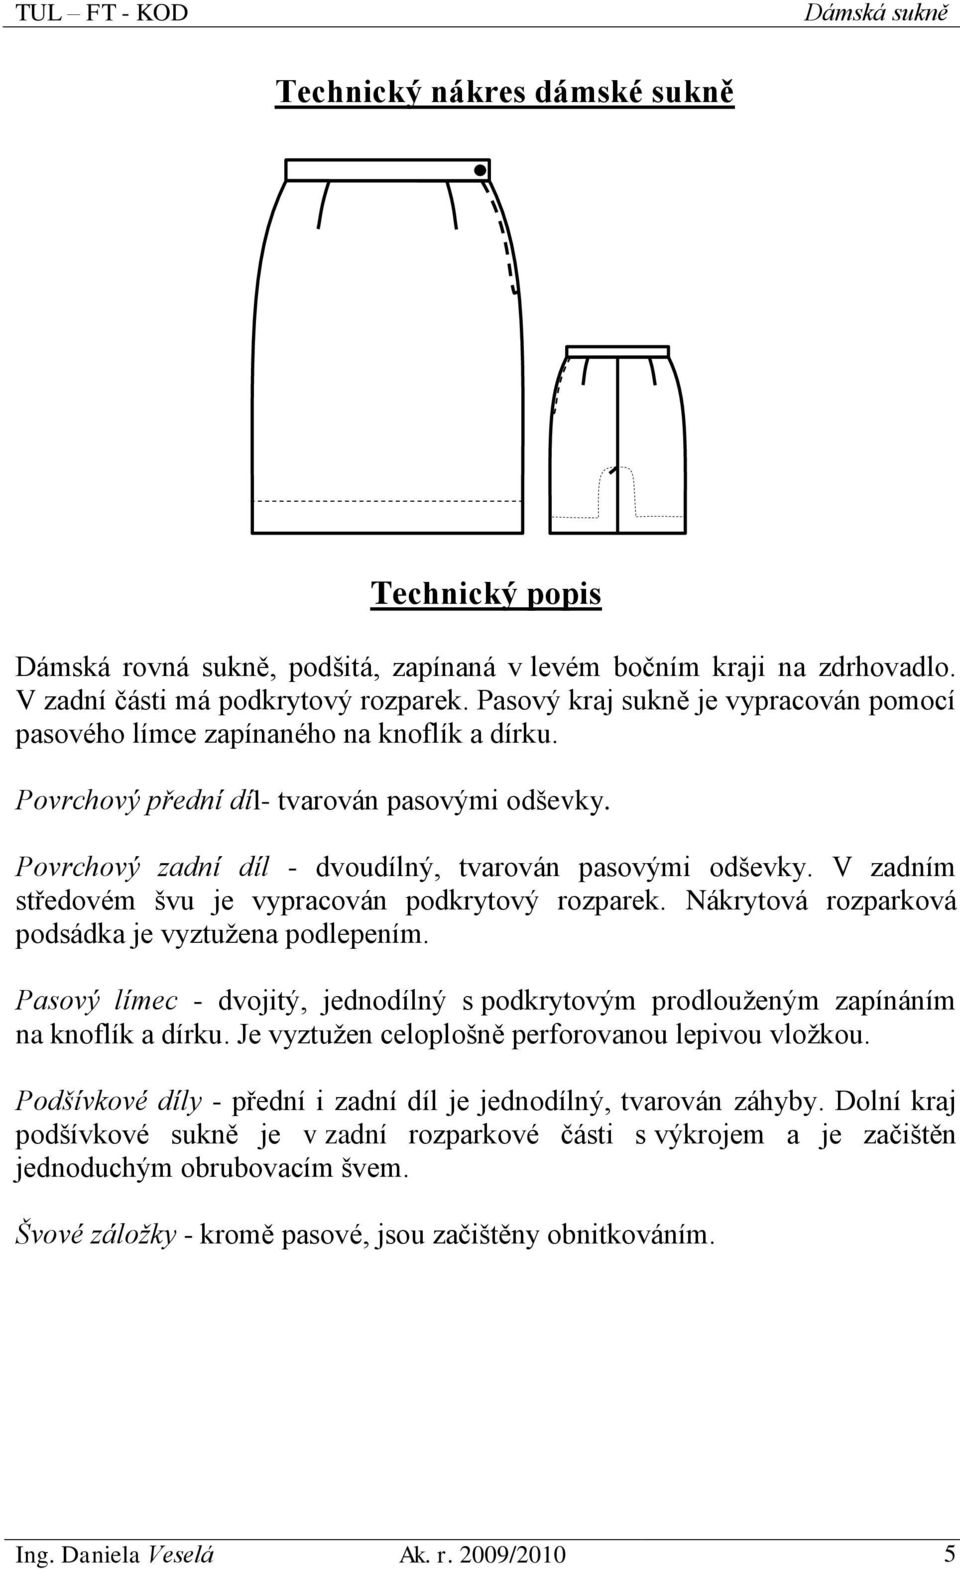 Technický nákres. Technický popis - PDF Stažení zdarma